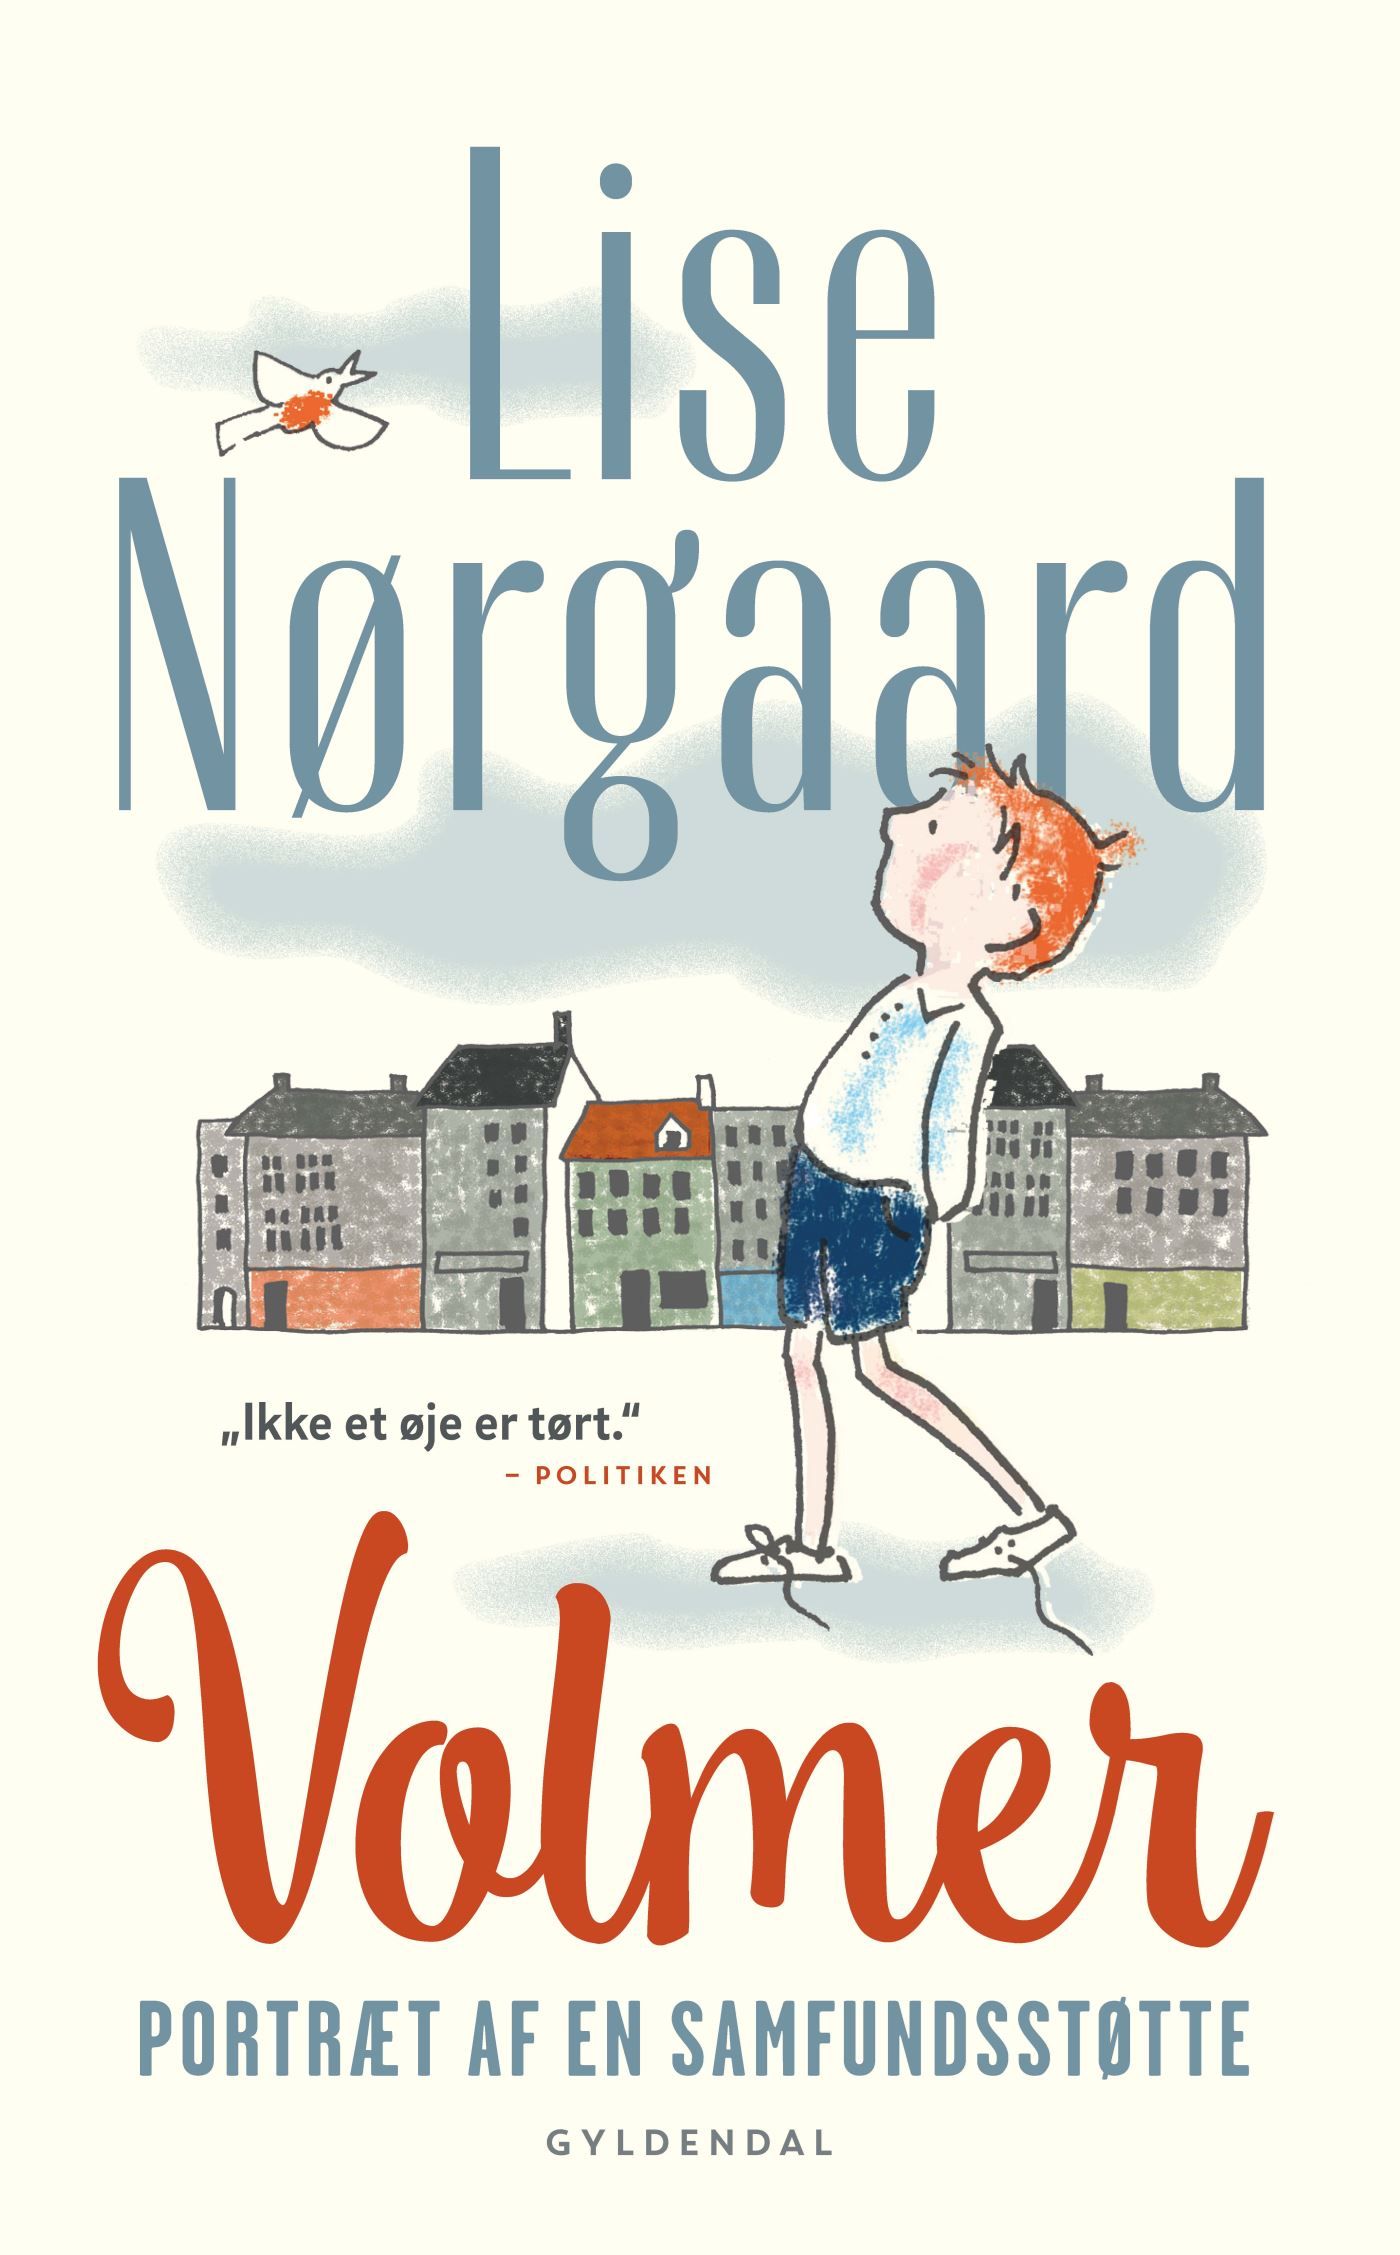 Volmer, audiobook by Lise Nørgaard